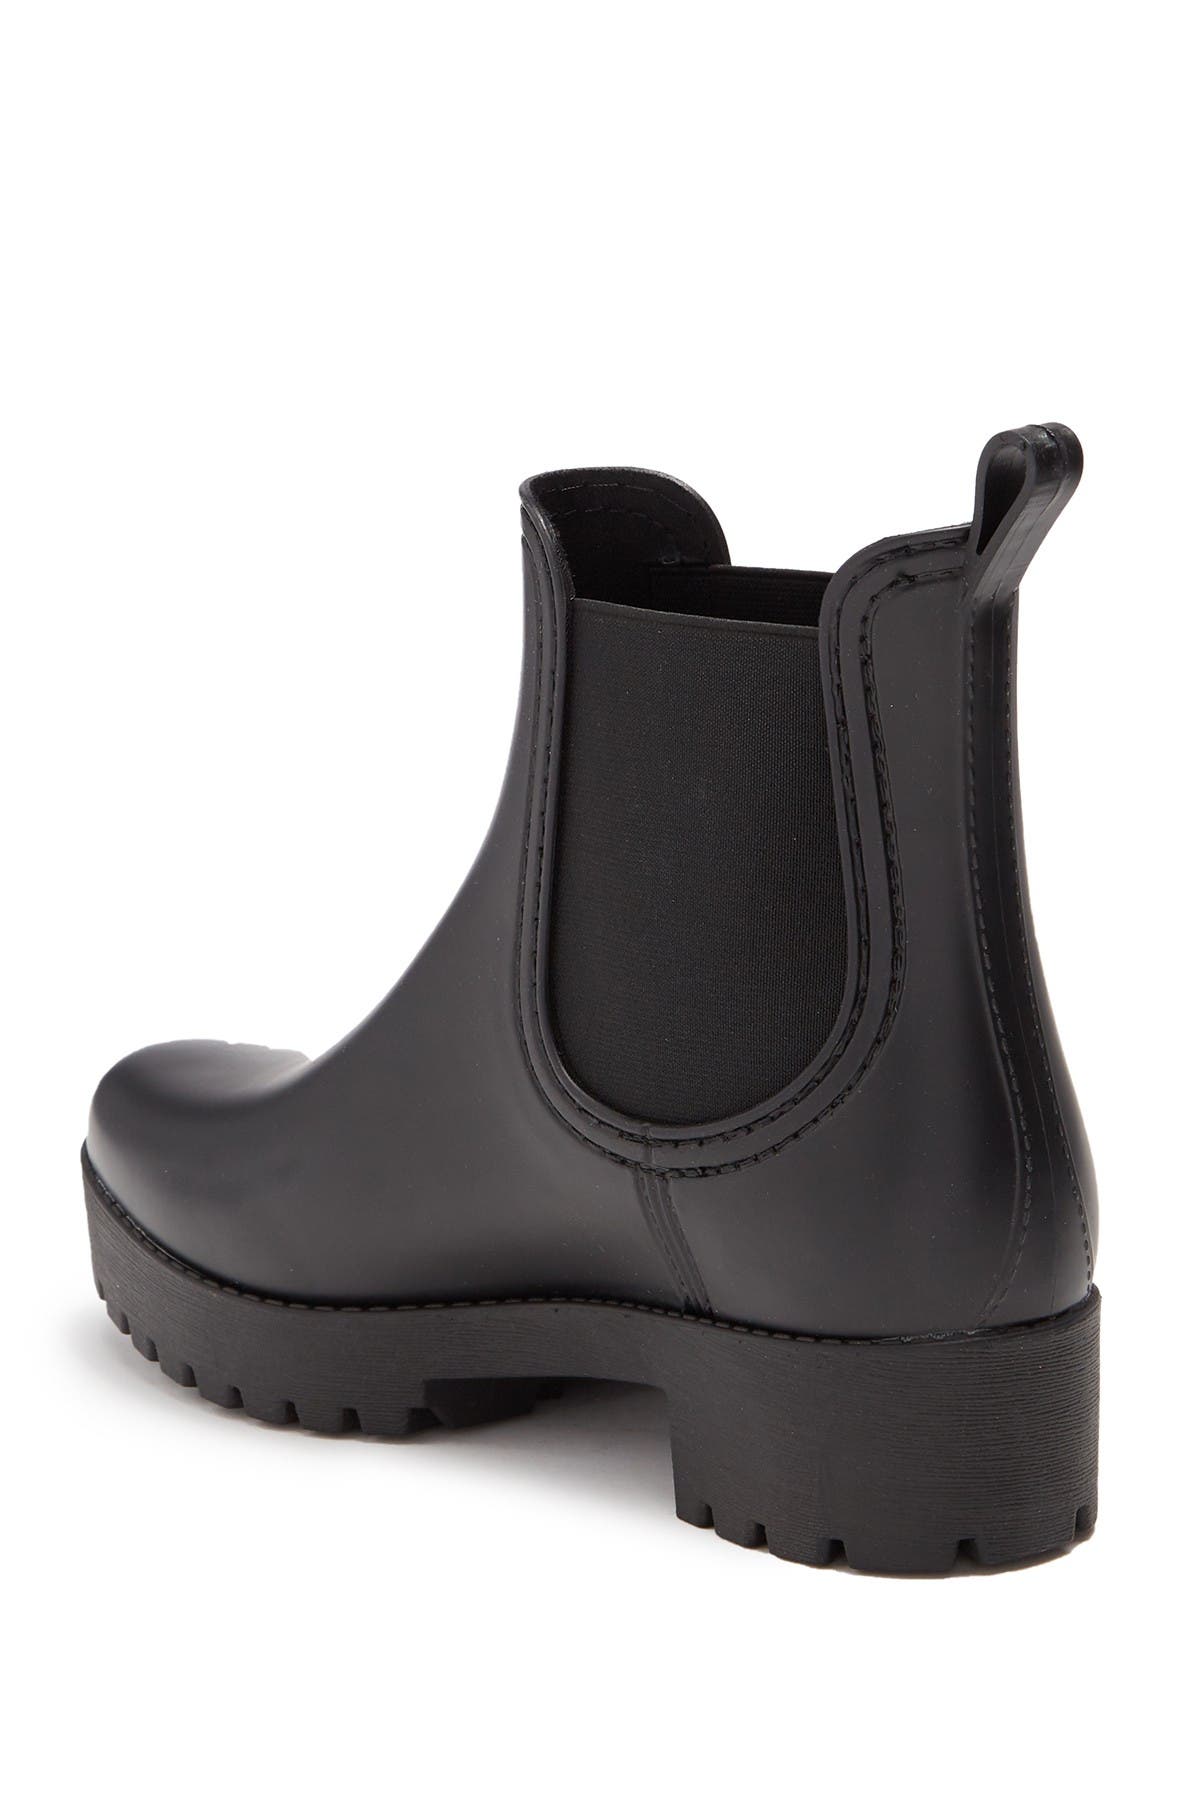 catherine malandrino rain boots